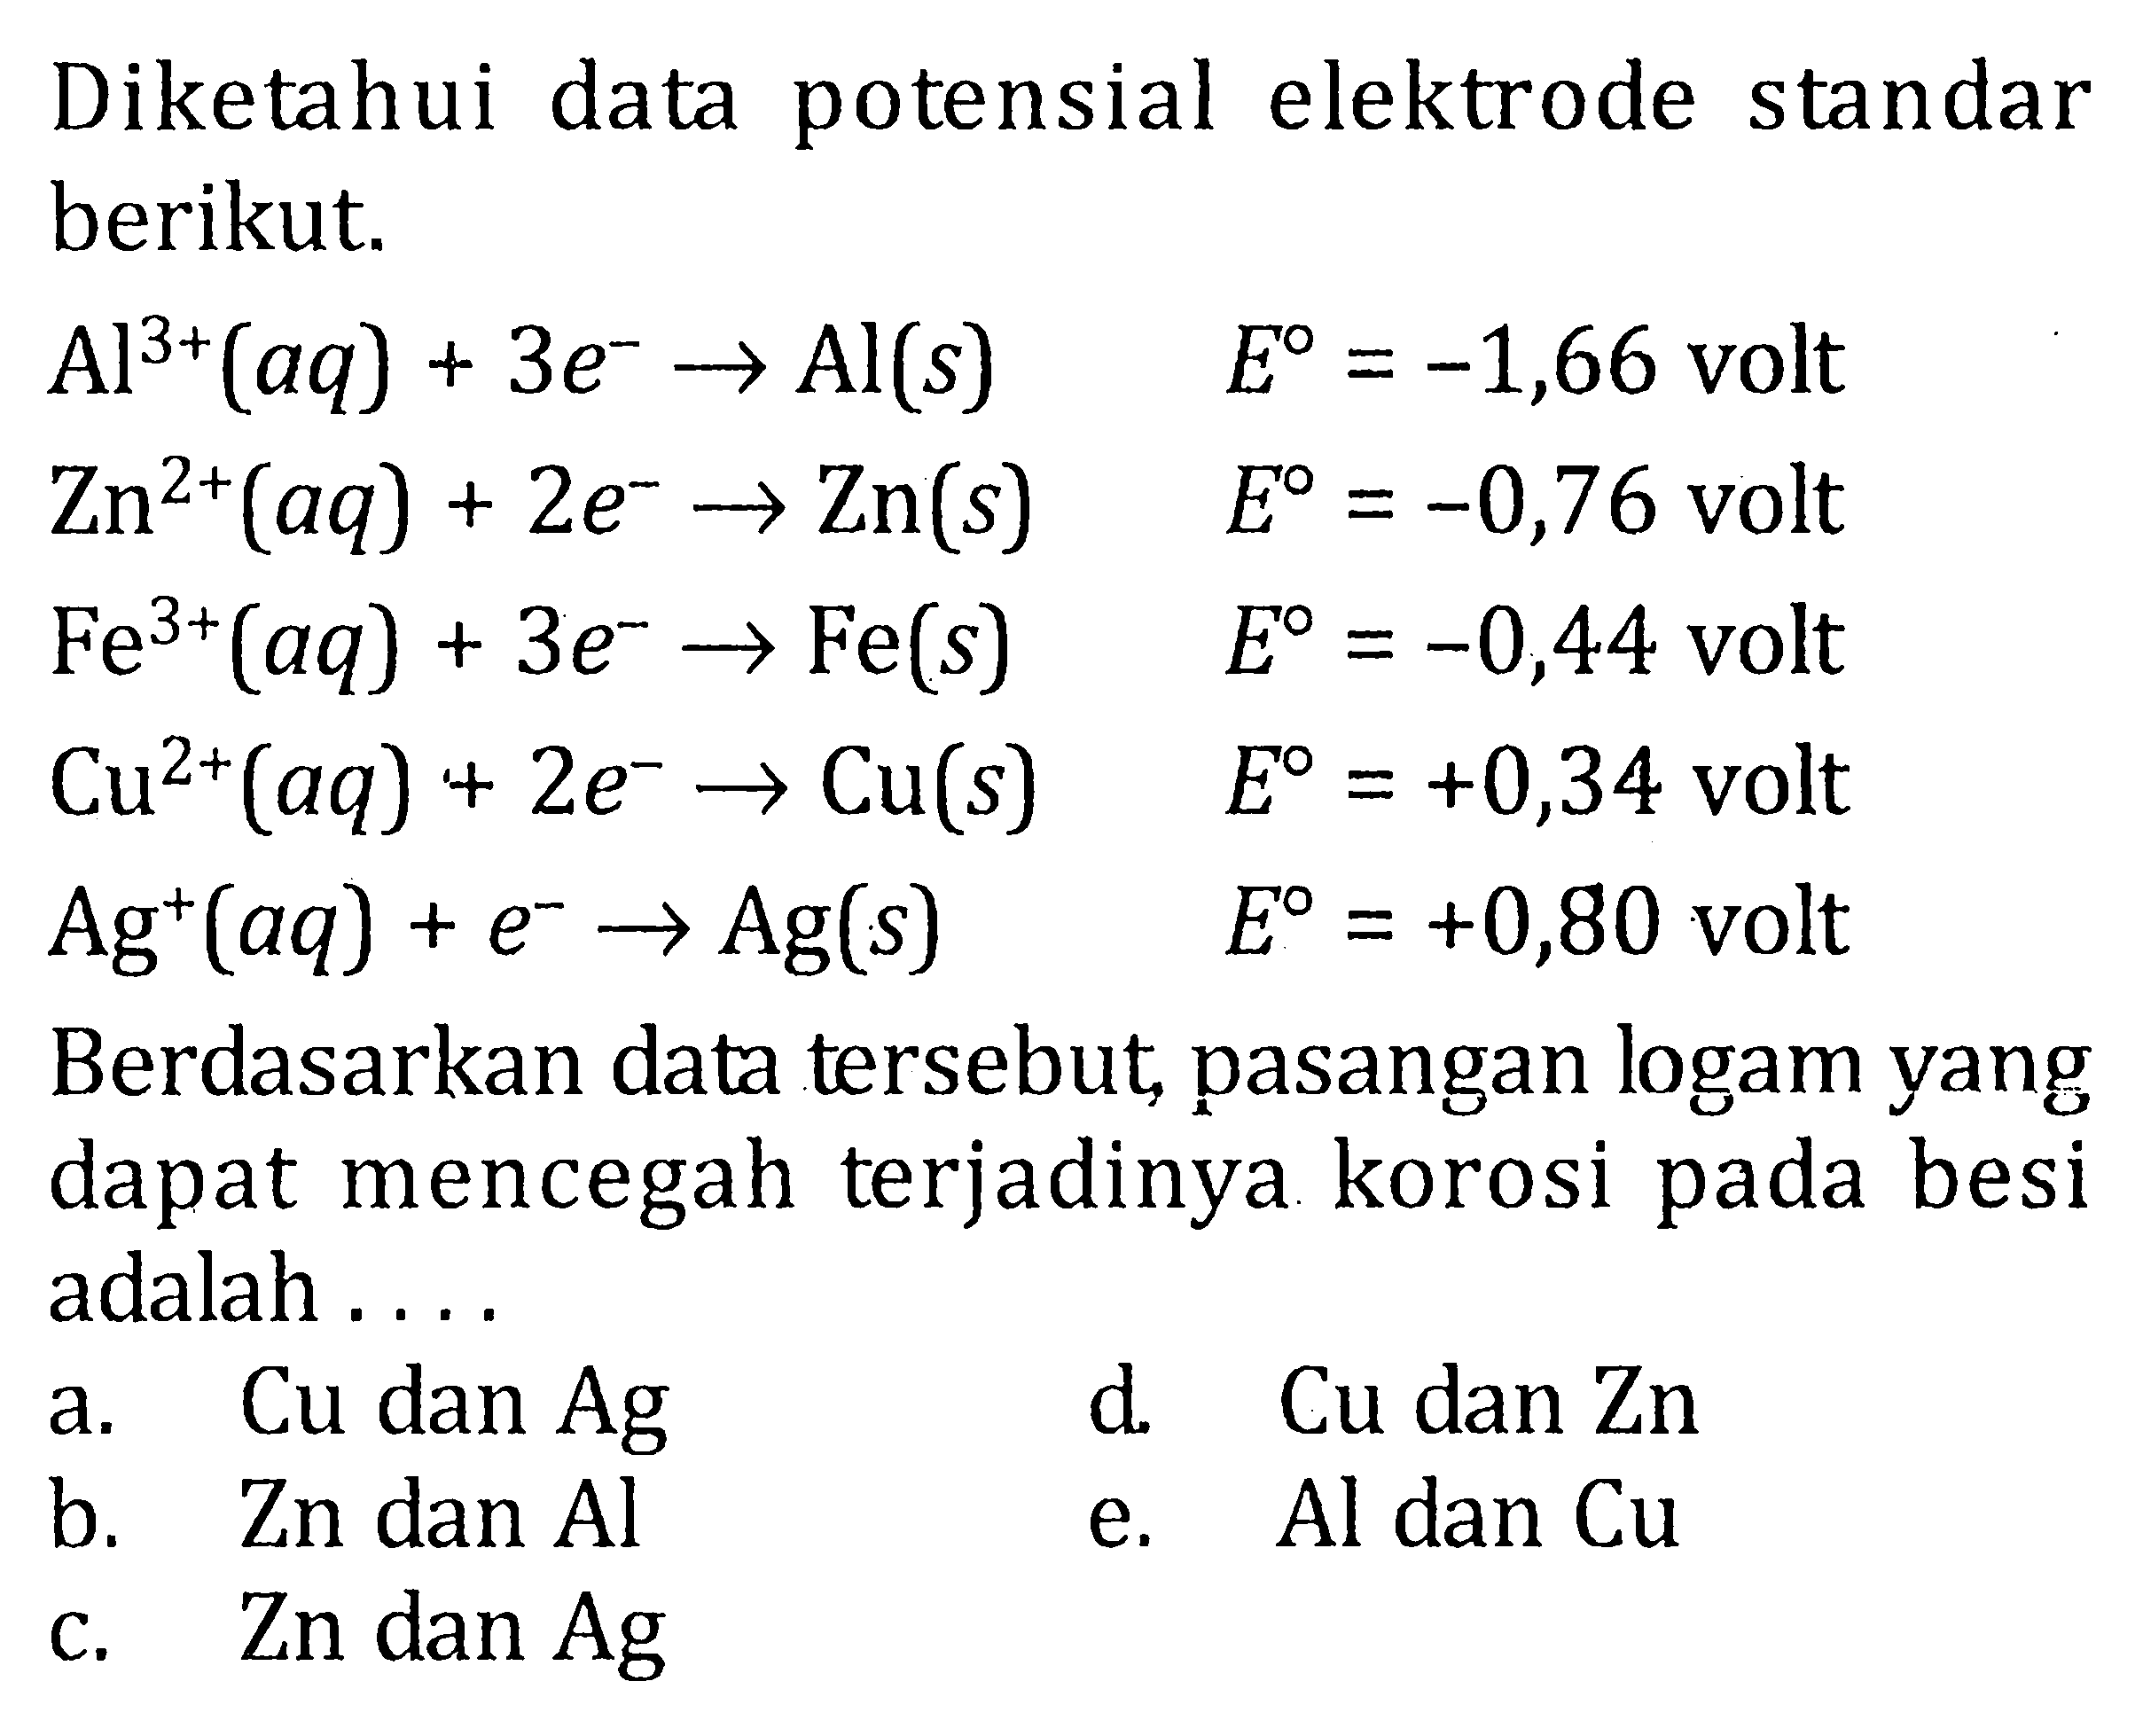 Diketahui data potensial elektrode standar berikut. Al^3+(aq)+3e^- -> Al(s)  E=-1,66 volt   Zn^2+(aq)+2e^- -> Zn(s)  E=-0,76 volt   Fe^3+(aq)+3e^- -> Fe(s)  E=-0,44 volt   Cu^2+(aq)+2e^- -> Cu(s)  E=+0,34 volt   Ag^+(aq)+e^- -> Ag(s)  E=+0,80 volt  Berdasarkan data tersebut, pasangan logam yang dapat mencegah terjadinya korosi pada besi adalah .... 